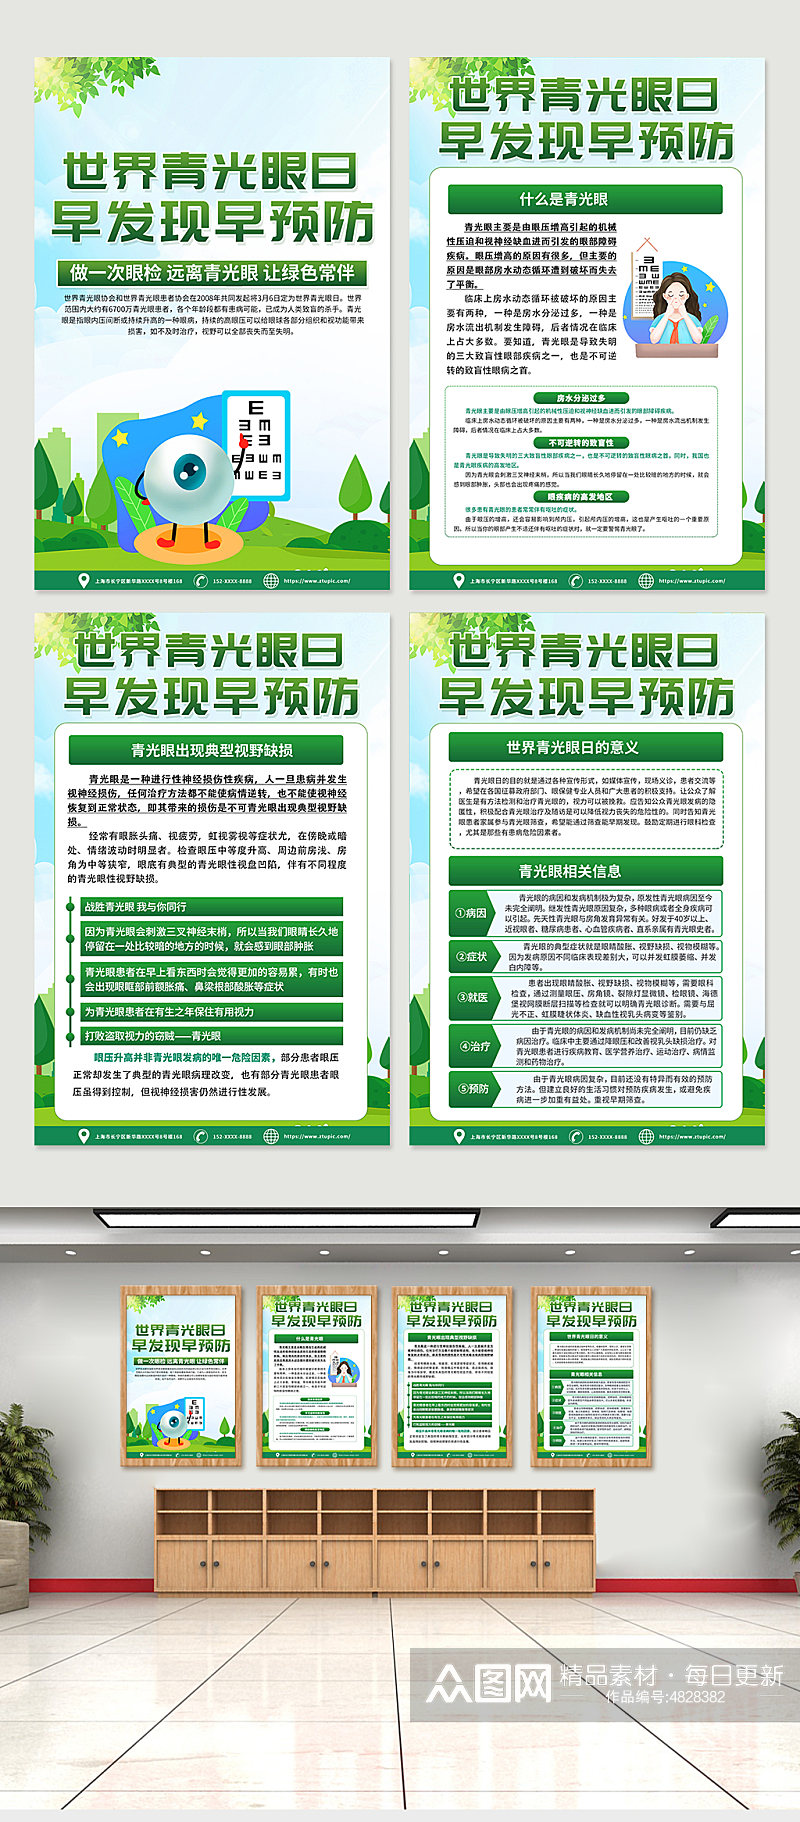 绿色世界青光眼日科普知识海报设计素材